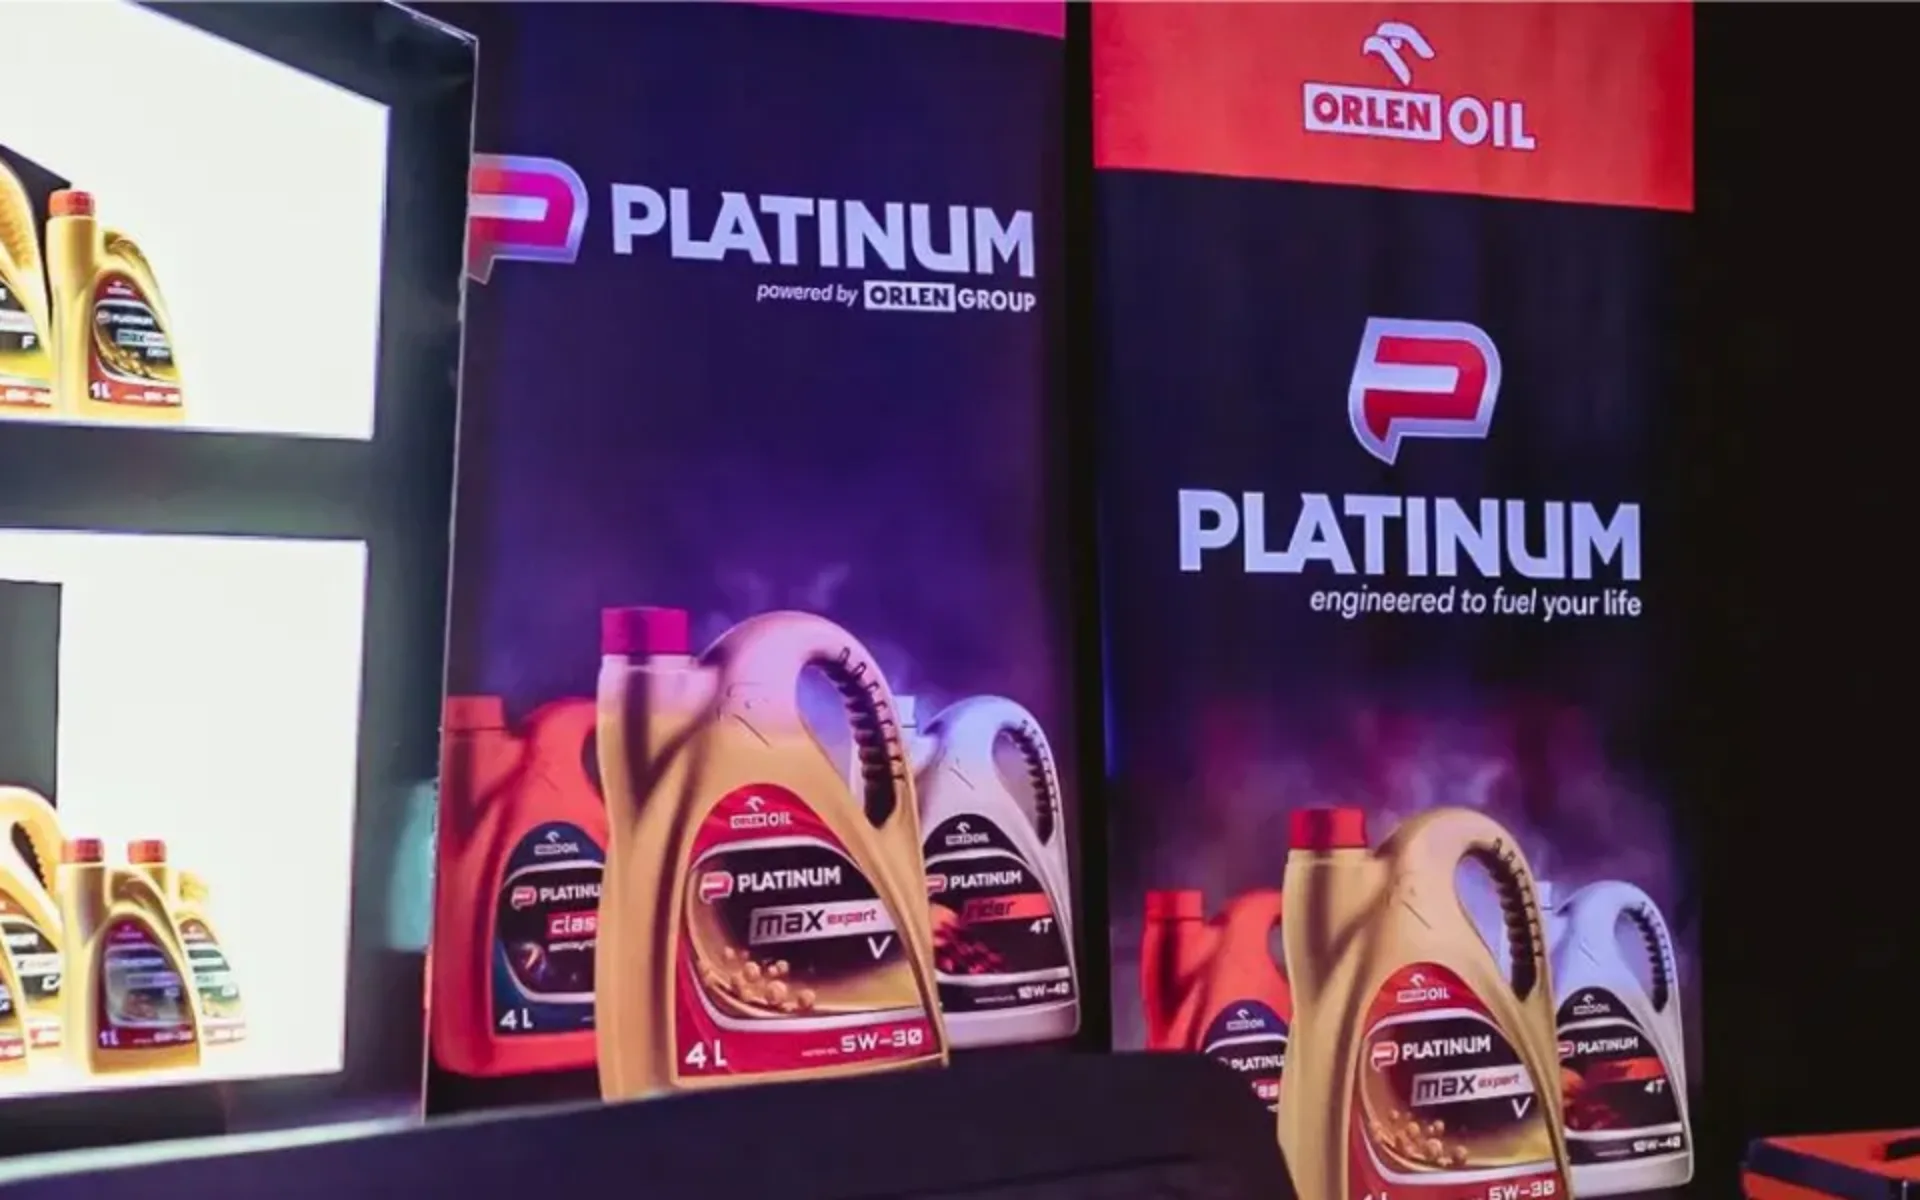 Mistrzostwa Mechaników zacieśniają współpracę z ORLEN OIL i marką PLATINUM ORLEN OIL